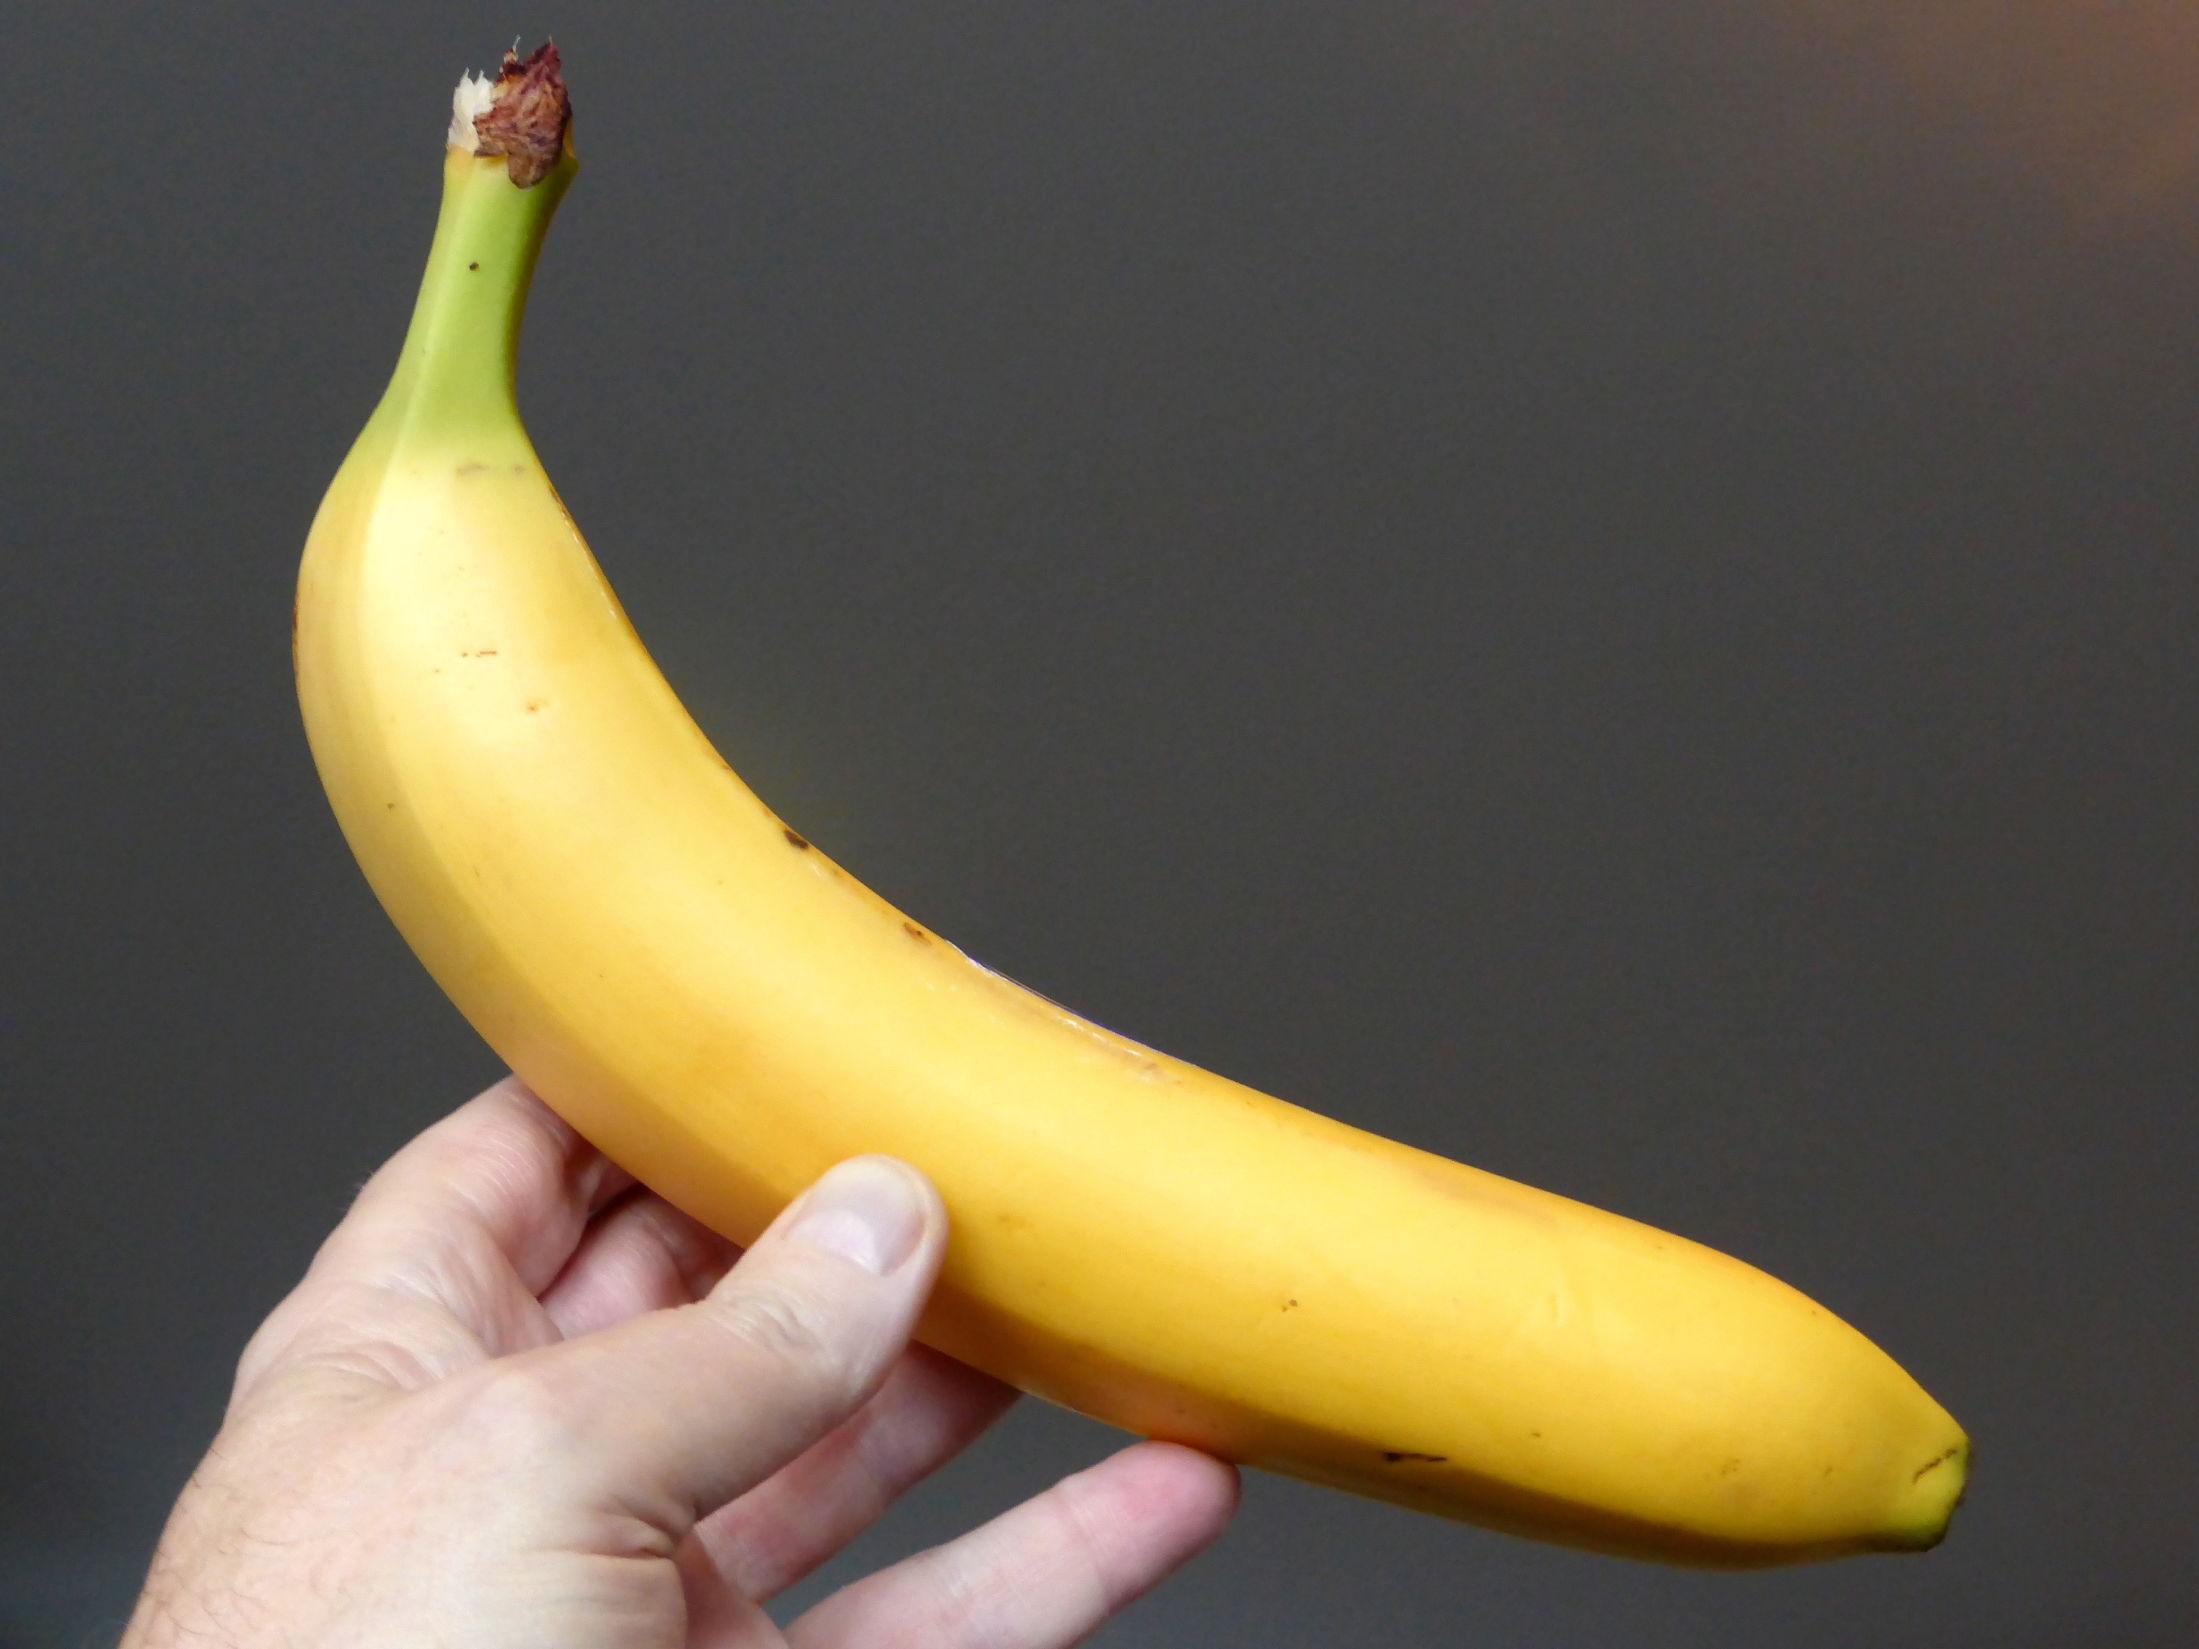 FLERE FUNKSJONER: Bananen fungerer like bra på brødskiven, som skopuss eller i tekstiler. Foto: Jan Ovind/VG